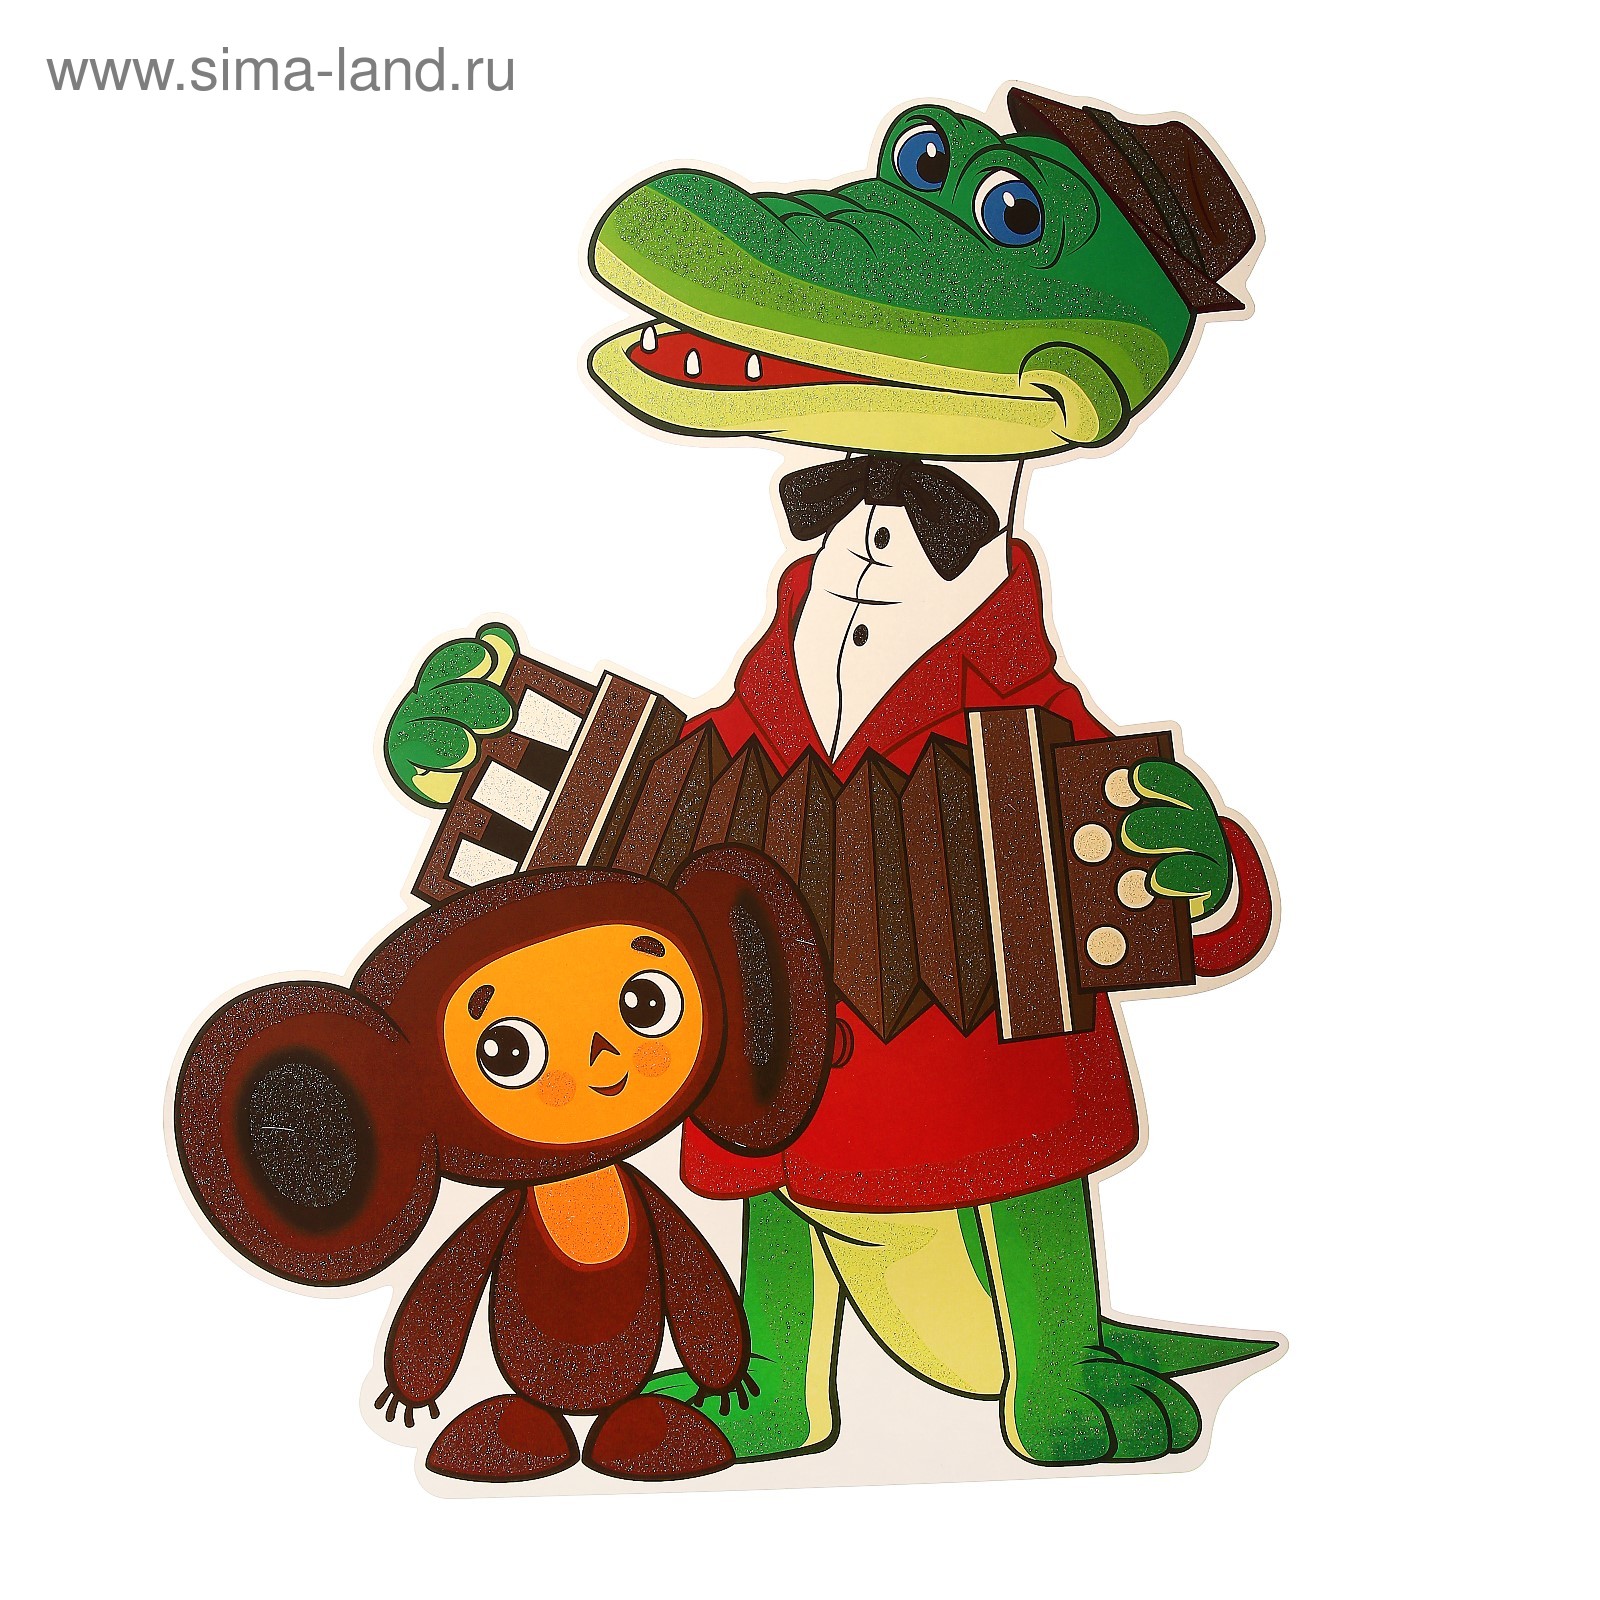 Плакат фигурный Чебурашка и крокодил Гена 500 х 350 мм (4070787) - Купить  по цене от 45.70 руб. | Интернет магазин SIMA-LAND.RU